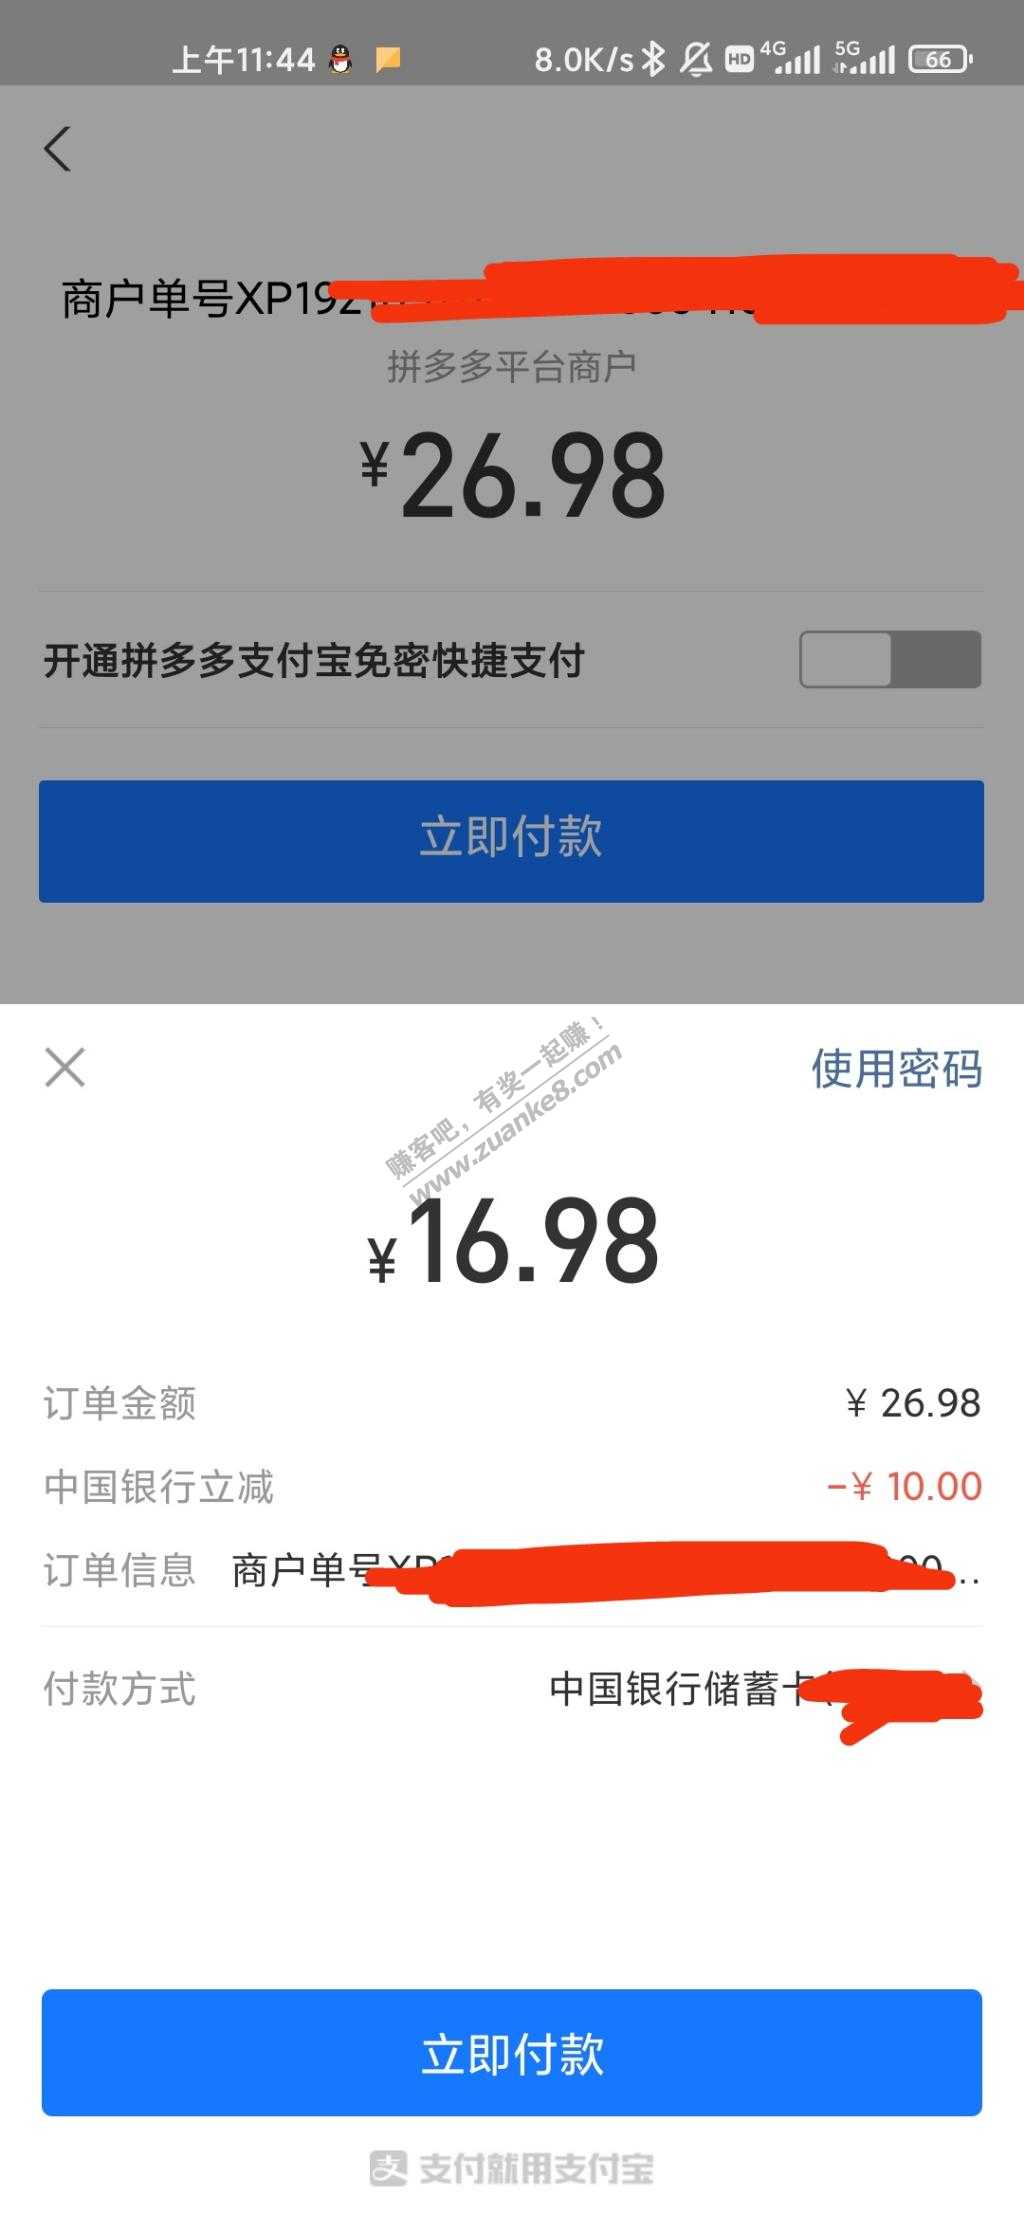 多多买菜中行-10-惠小助(52huixz.com)